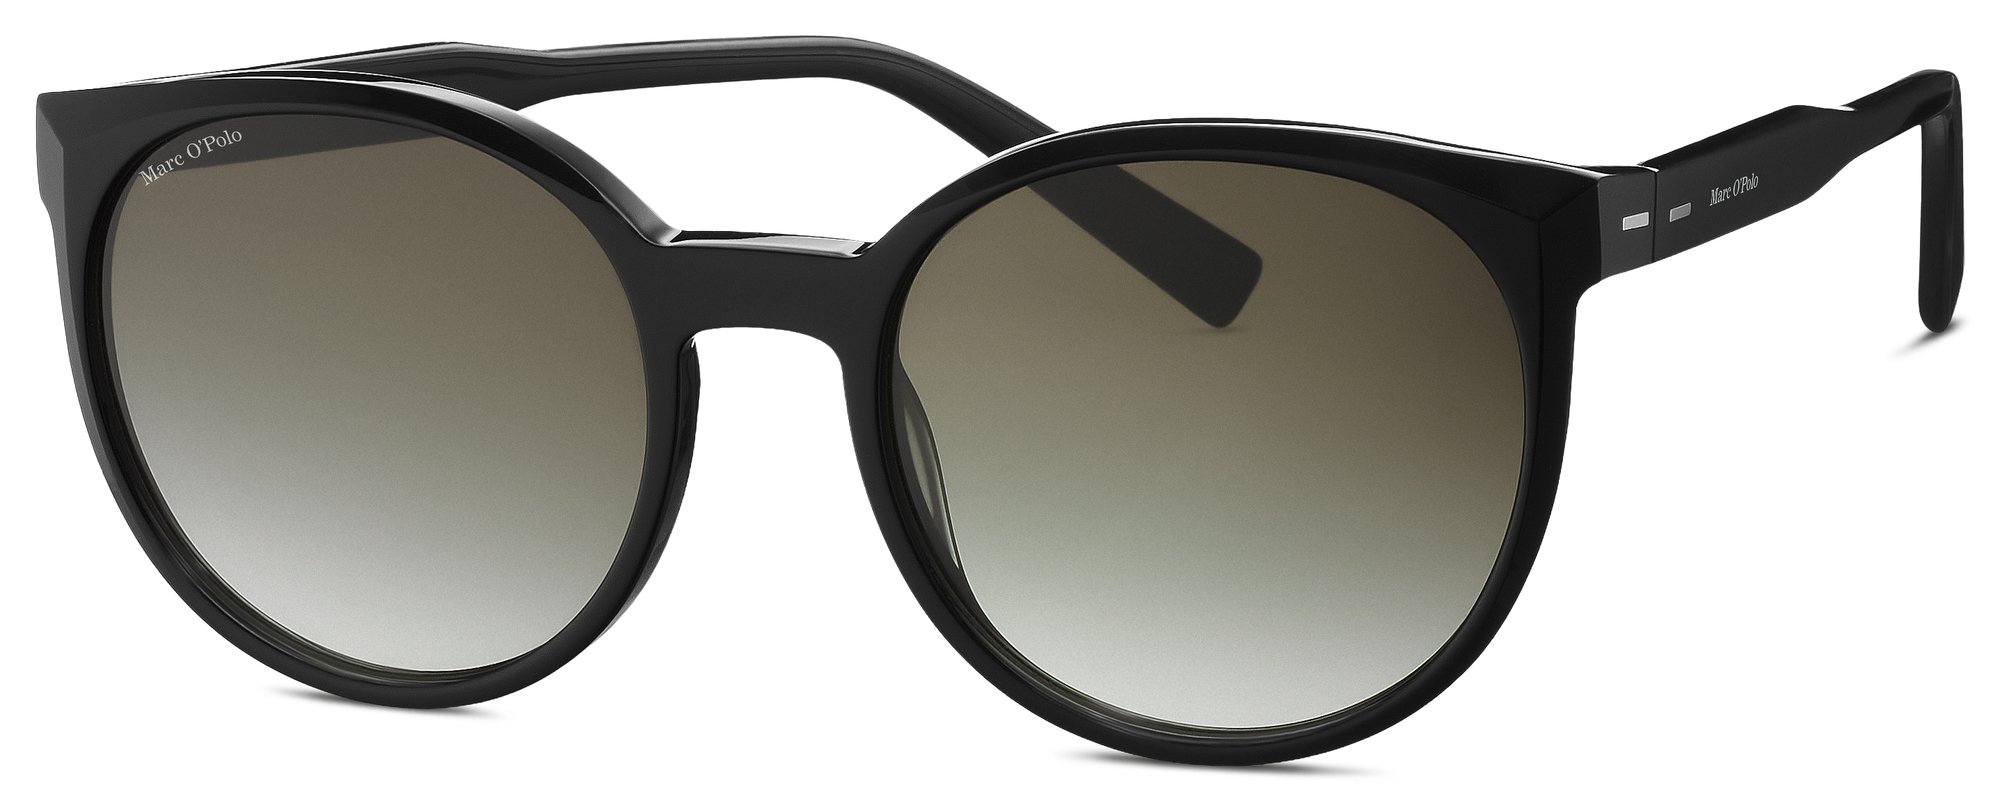 Das Bild zeigt die Sonnenbrille 506206 10 von der Marke Marc O‘Polo in schwarz.